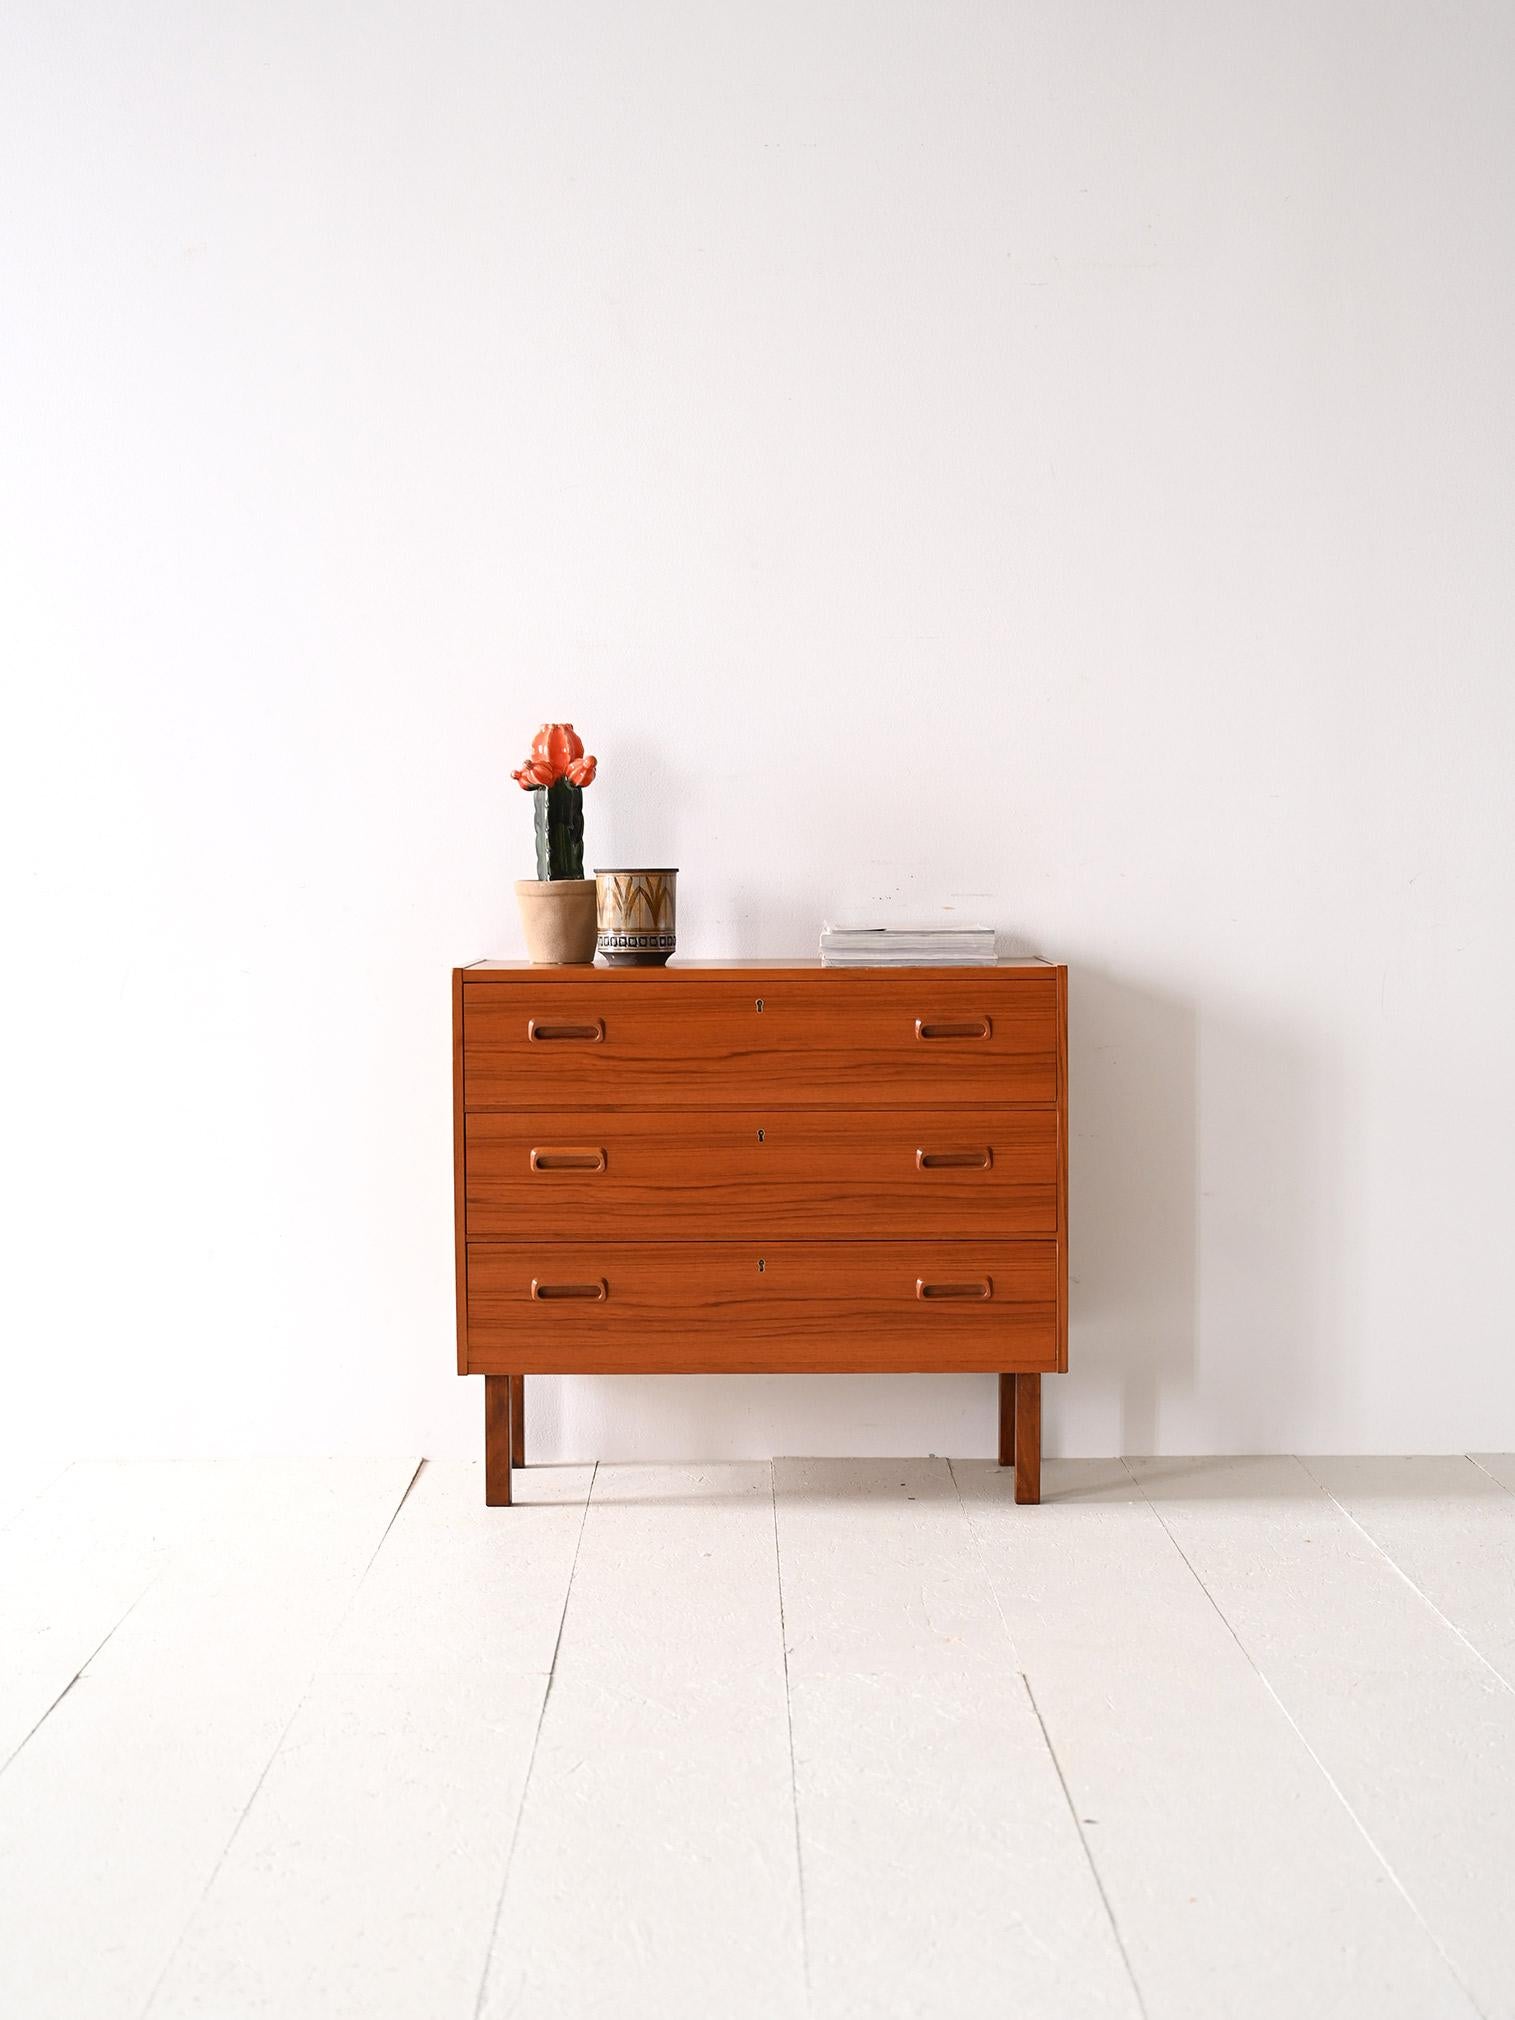 Skandinavische Vintage-Möbel aus den 1960er Jahren.

Diese Kommode mit quadratischen, minimalen Linien verfügt über drei abschließbare Schubladen mit einem geschnitzten Holzgriff. 
Ein einzigartiges Möbelstück, das dank seines modernen Designs ideal